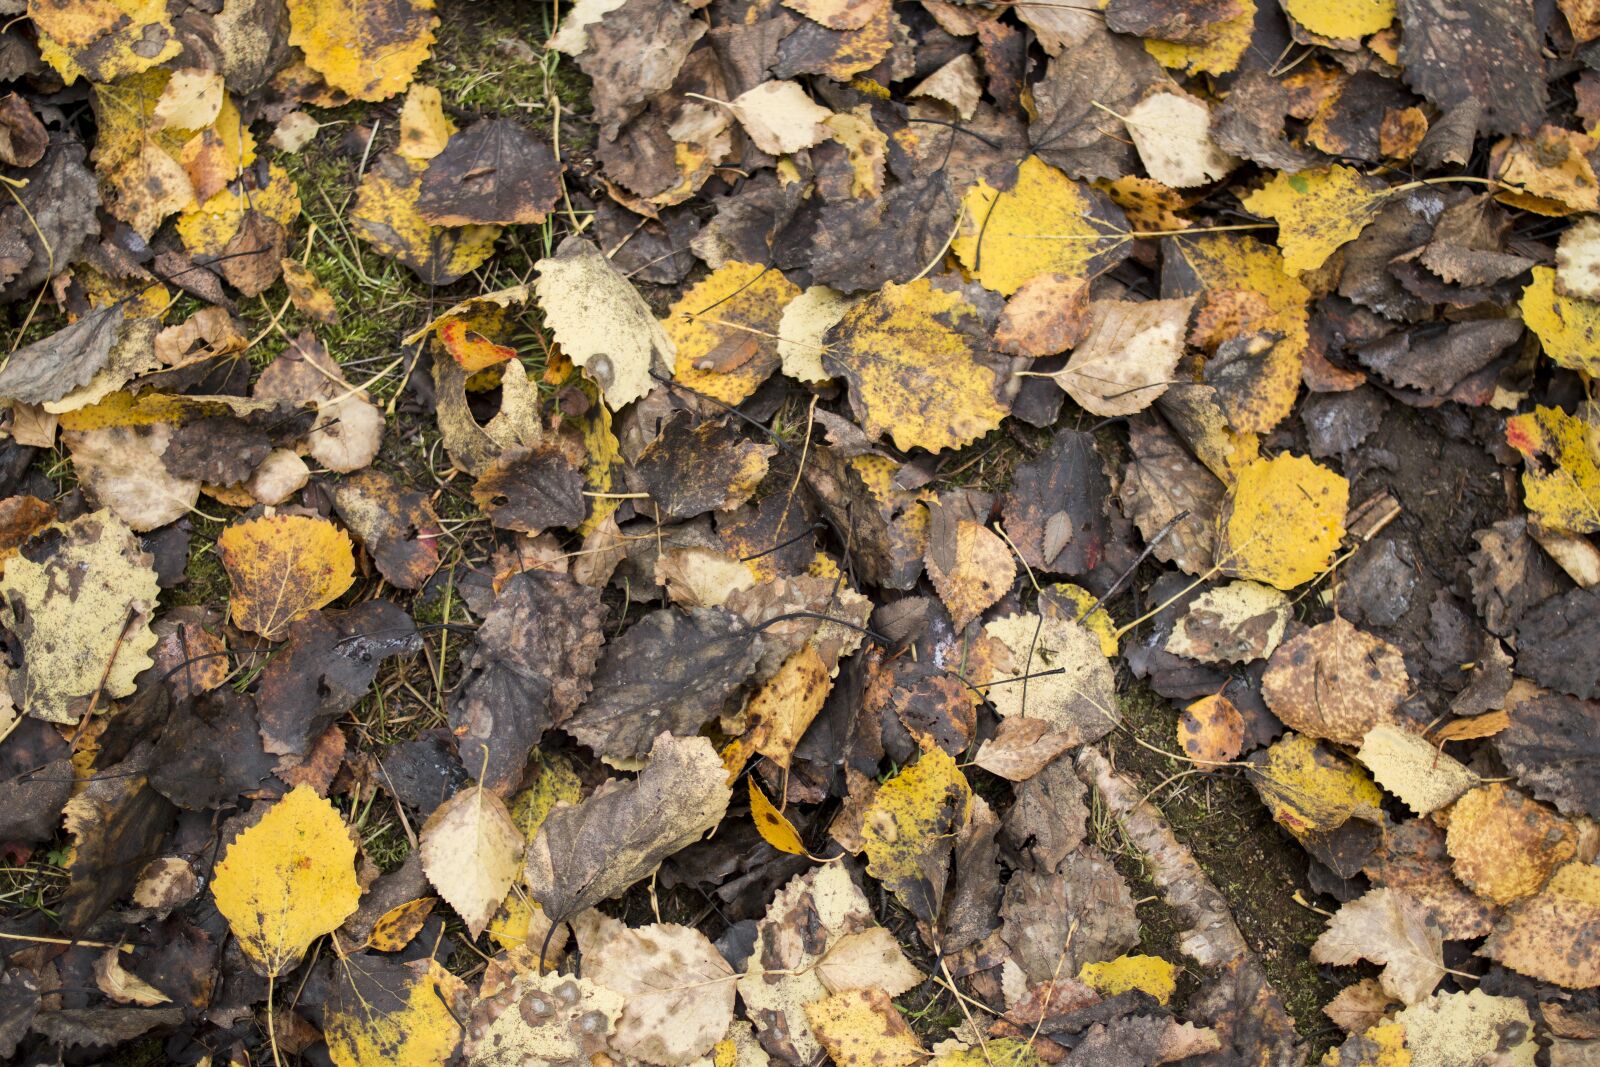 Canon EF 35mm F2 sample photo. Autumn, fall colors, foliage photography